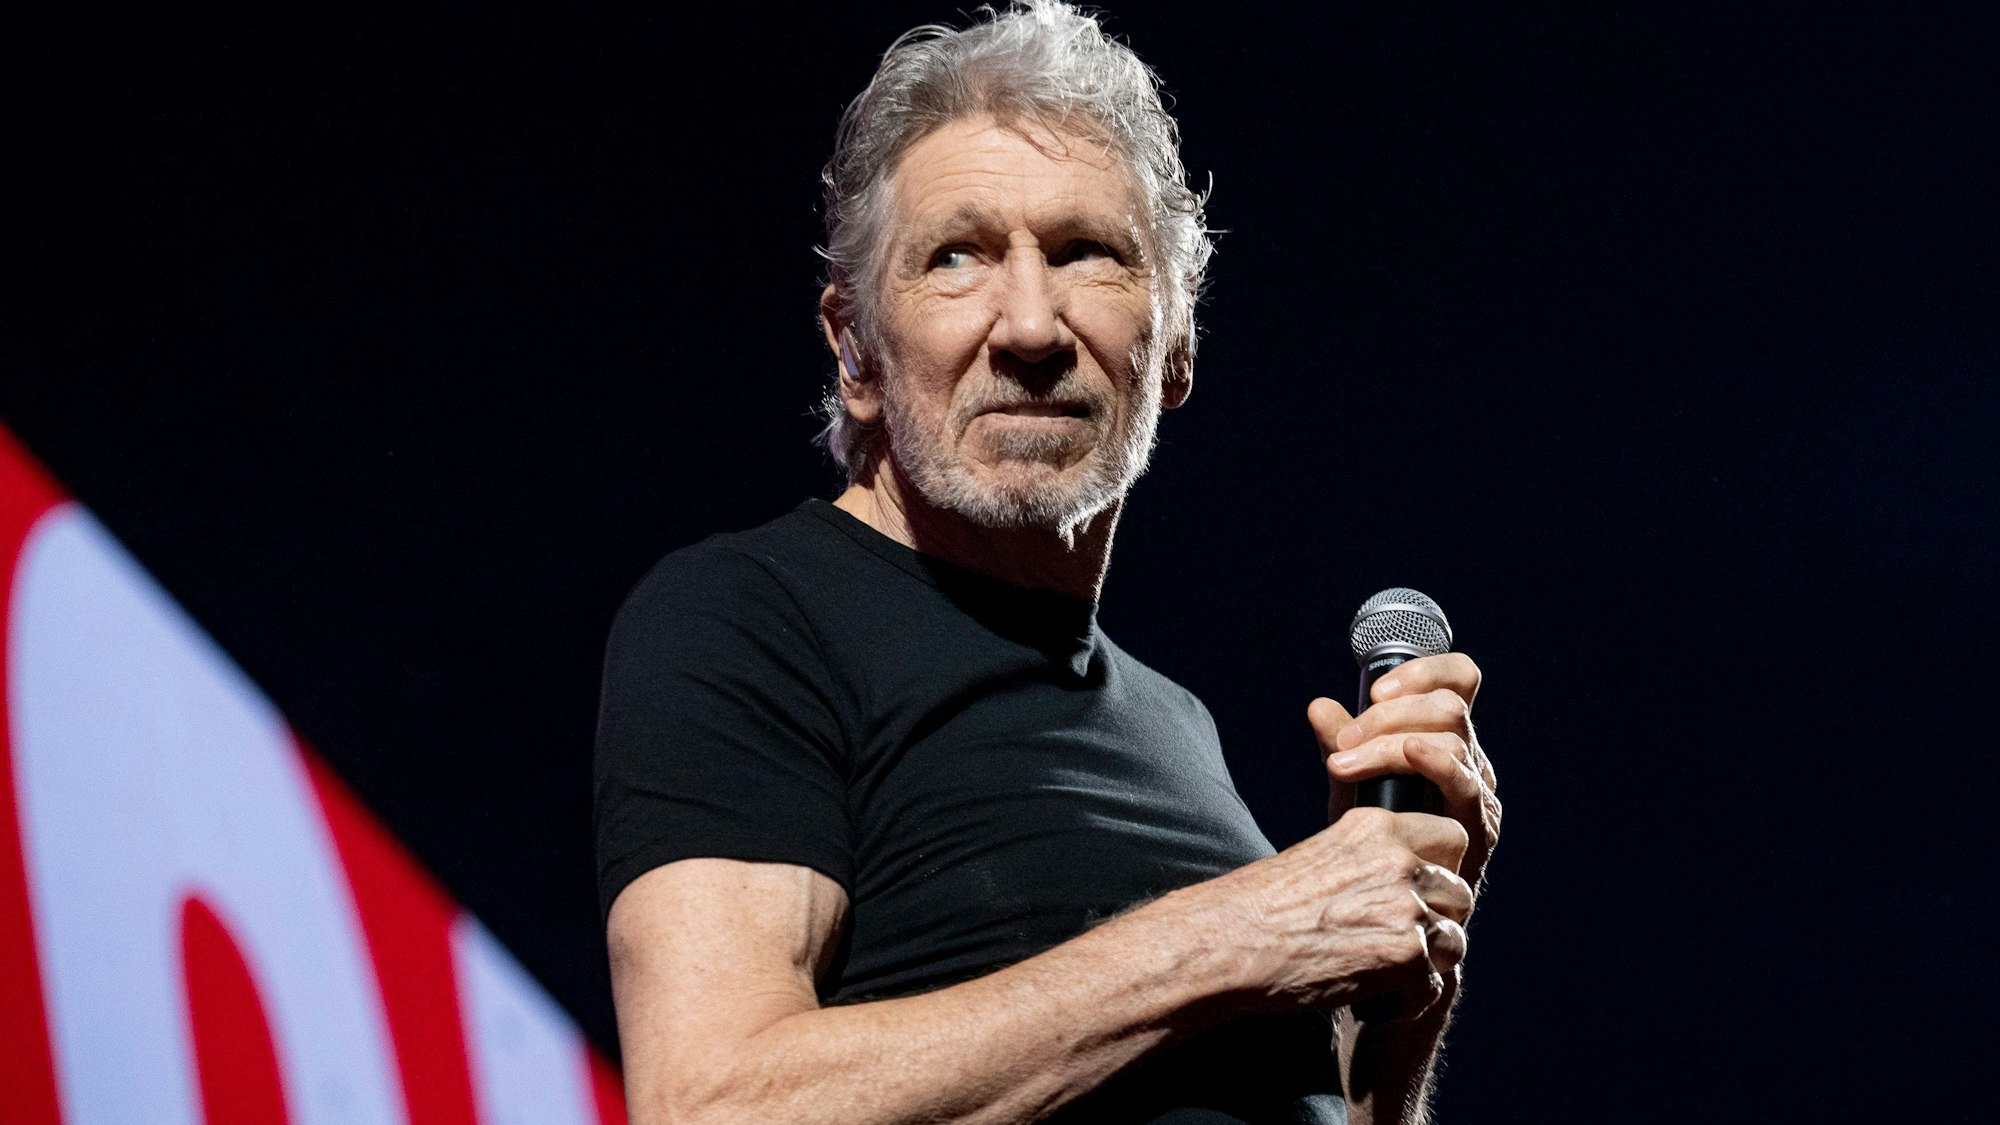 Roger Waters, britischer Sänger, während eines Auftritts im Palau Sant Jordi im Rahmen seiner ‚This is not a drill Tour‘.